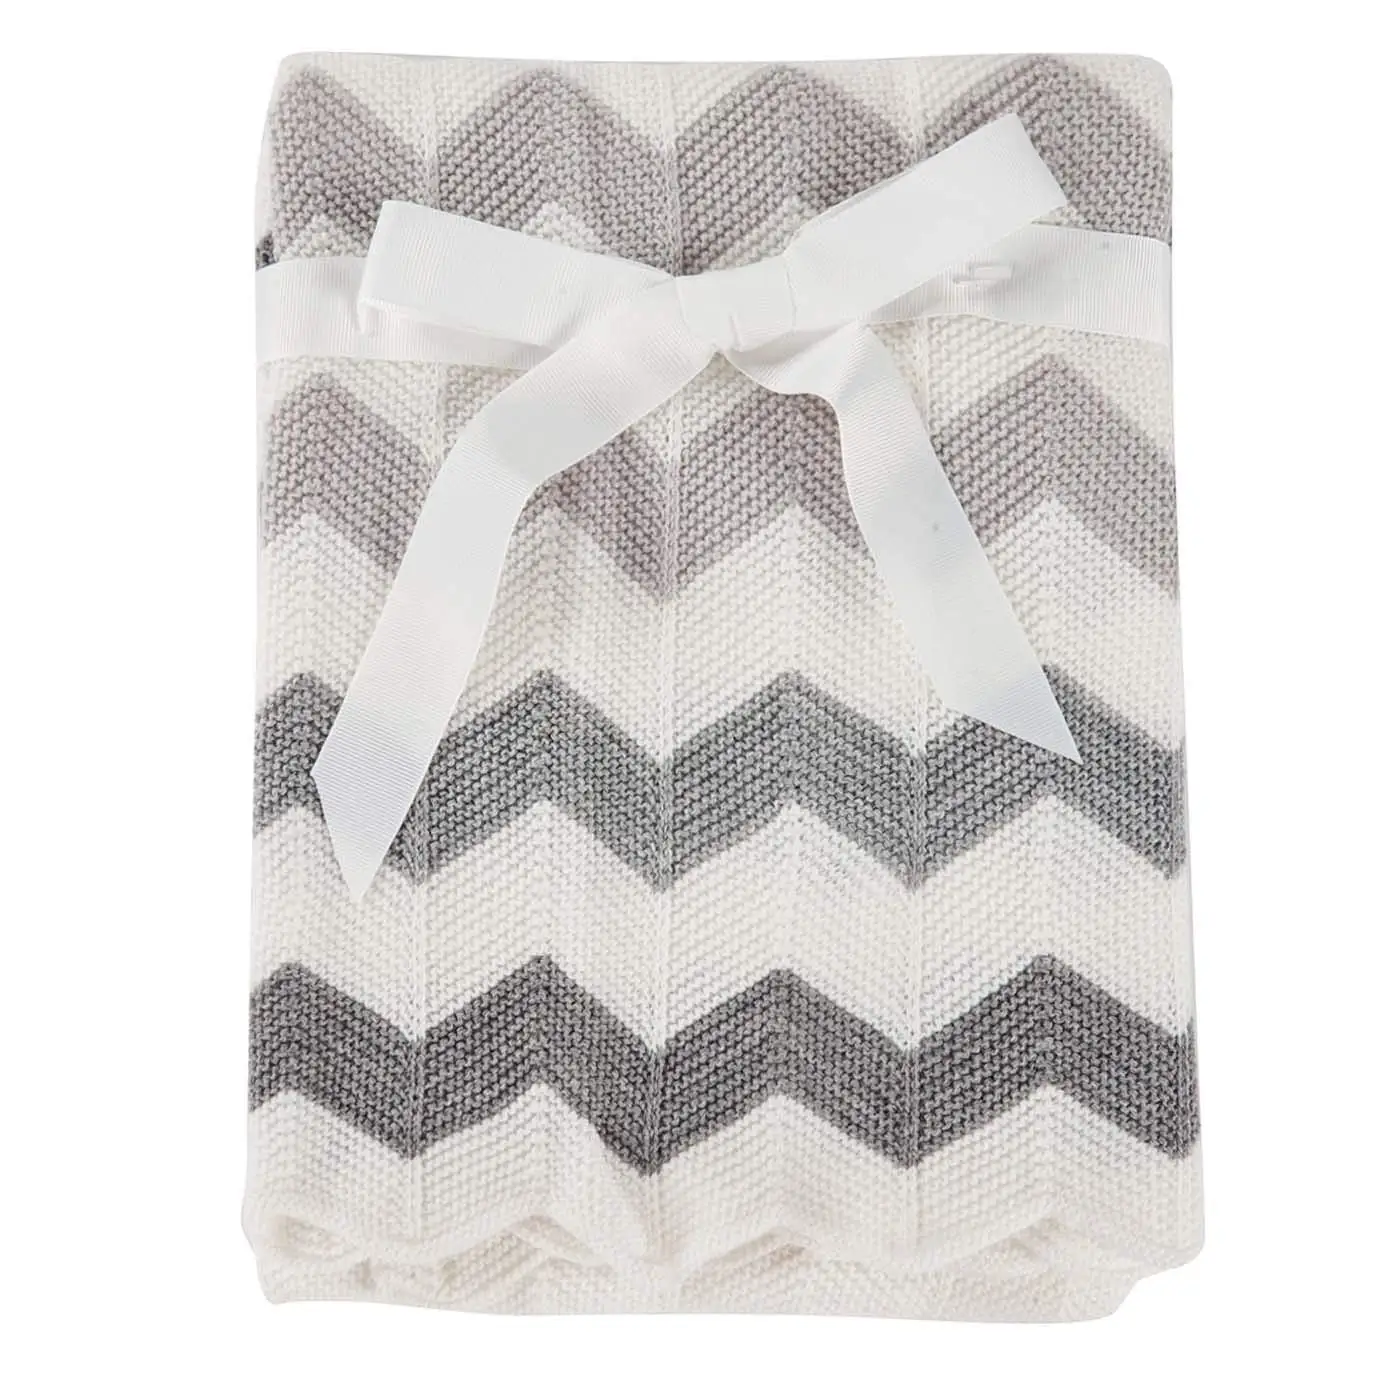 Baby Knitted Blanket Soft Toddler Nursery Crib Blankets Receiving Swaddle Blanket Stroller Cover for Girls Boys